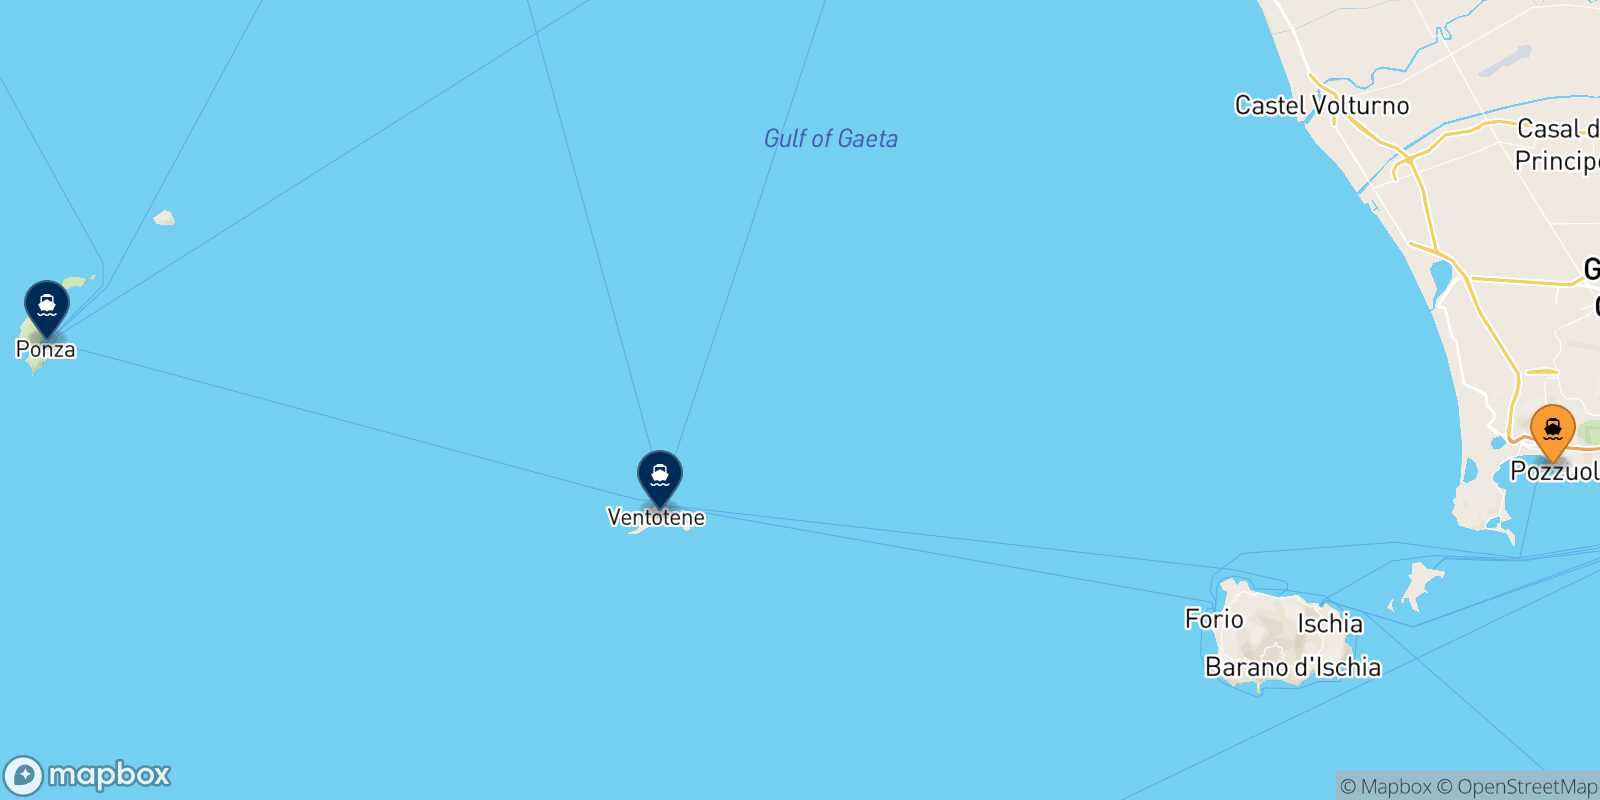 Mappa delle destinazioni raggiungibili da Casamicciola (Ischia)